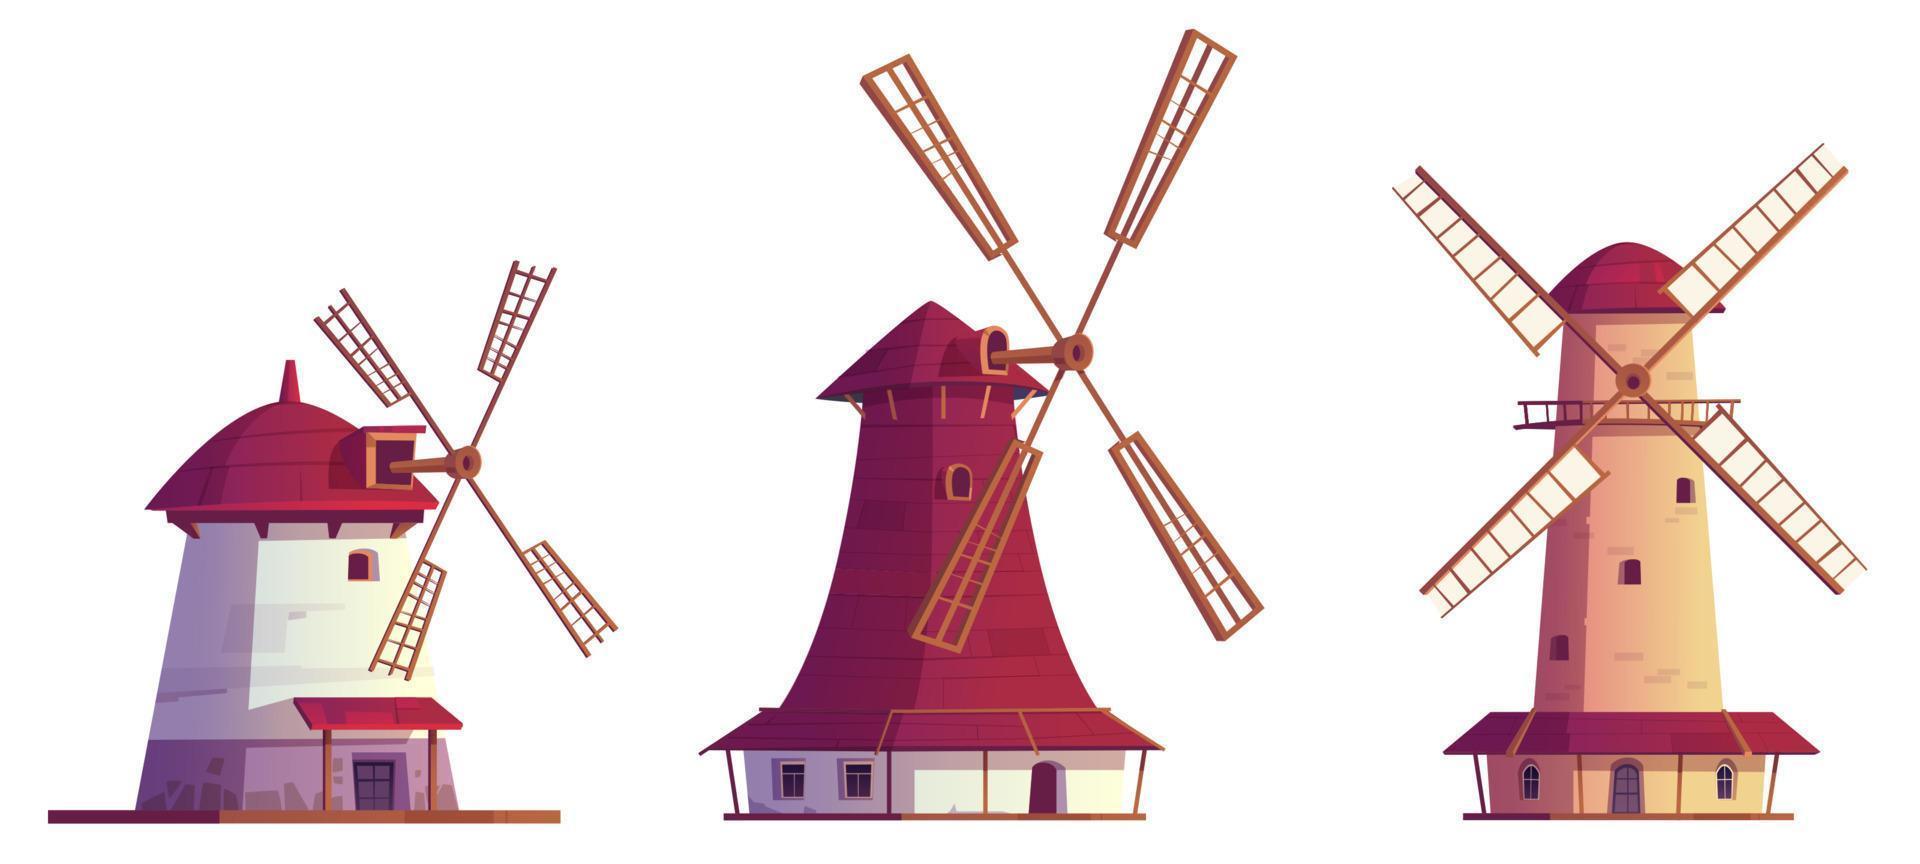 moinhos de vento dos desenhos animados, conjunto isolado de edifícios antigos vetor